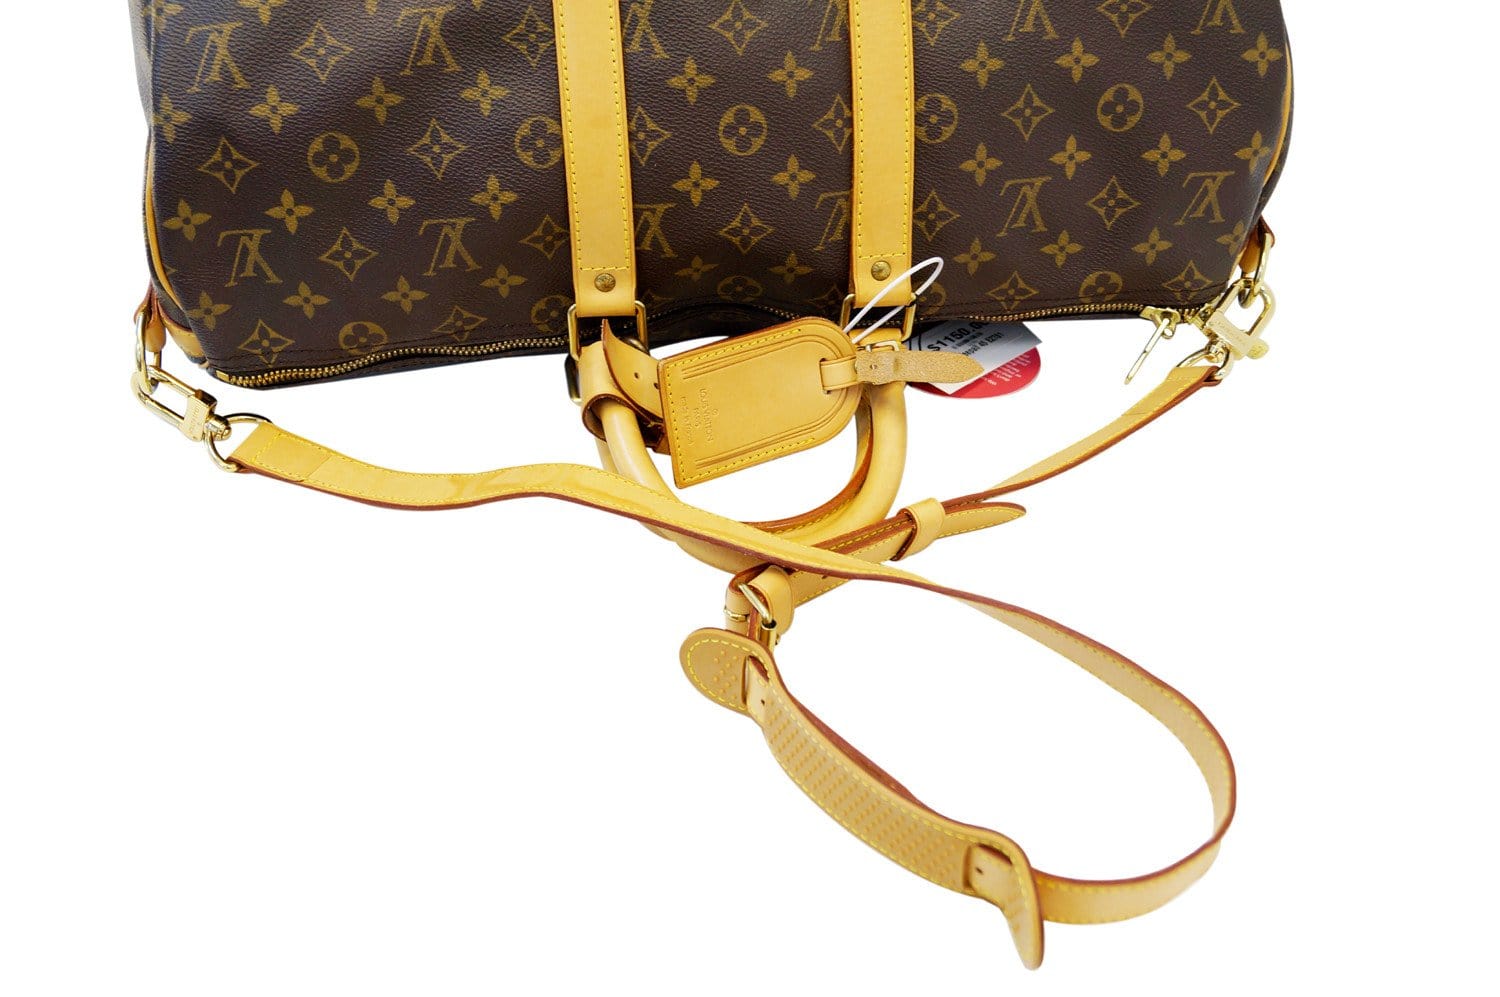 Handbags Louis Vuitton Louis Vuitton Damier Azur Keepall Bandouliere 45 Boston Bag N48223 Auth 32852a